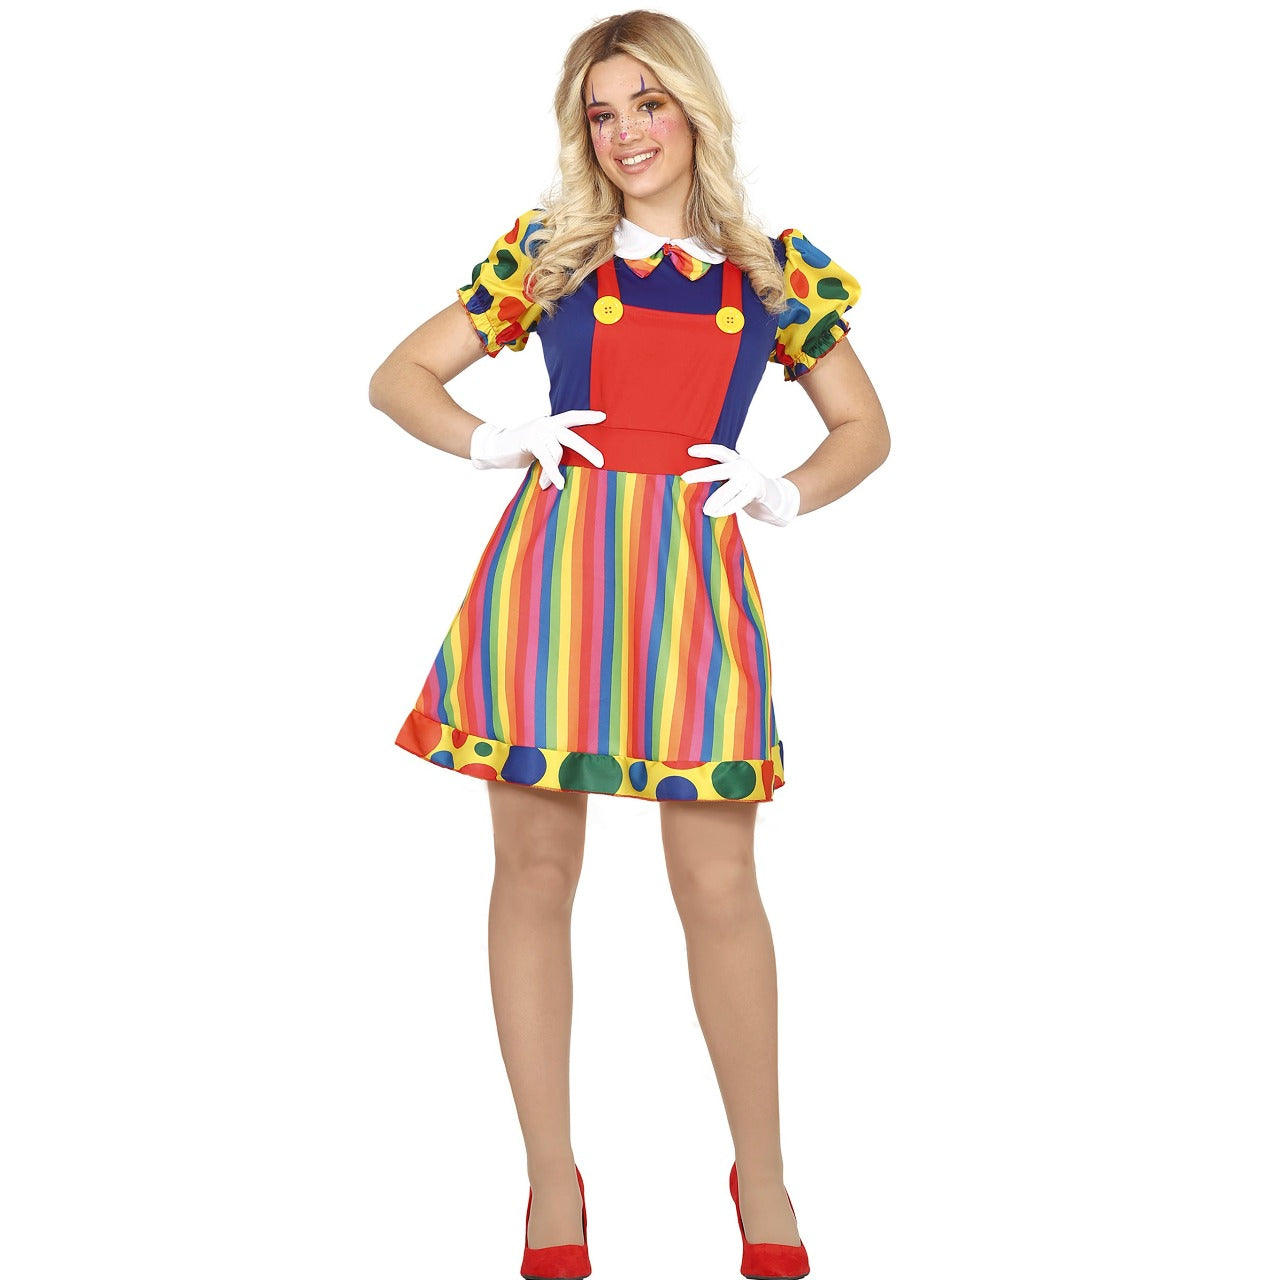 Acquista online il costume da Clown Smile per donna